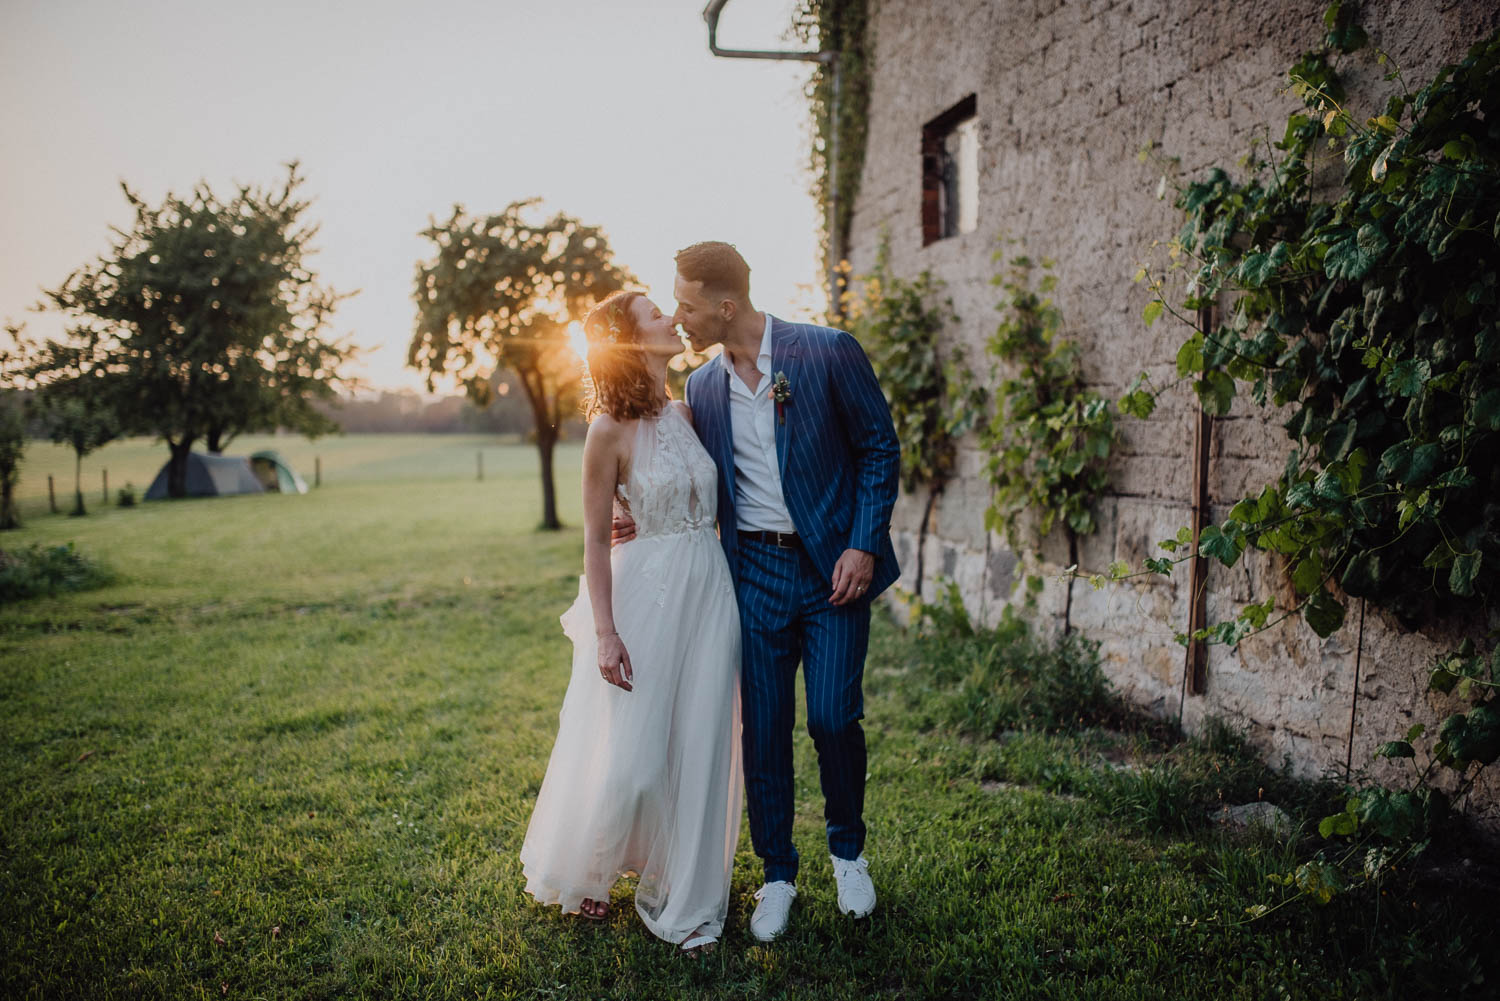 Svatební focení na konci svatebního dne, západ slunce | svatební fotograf Brno